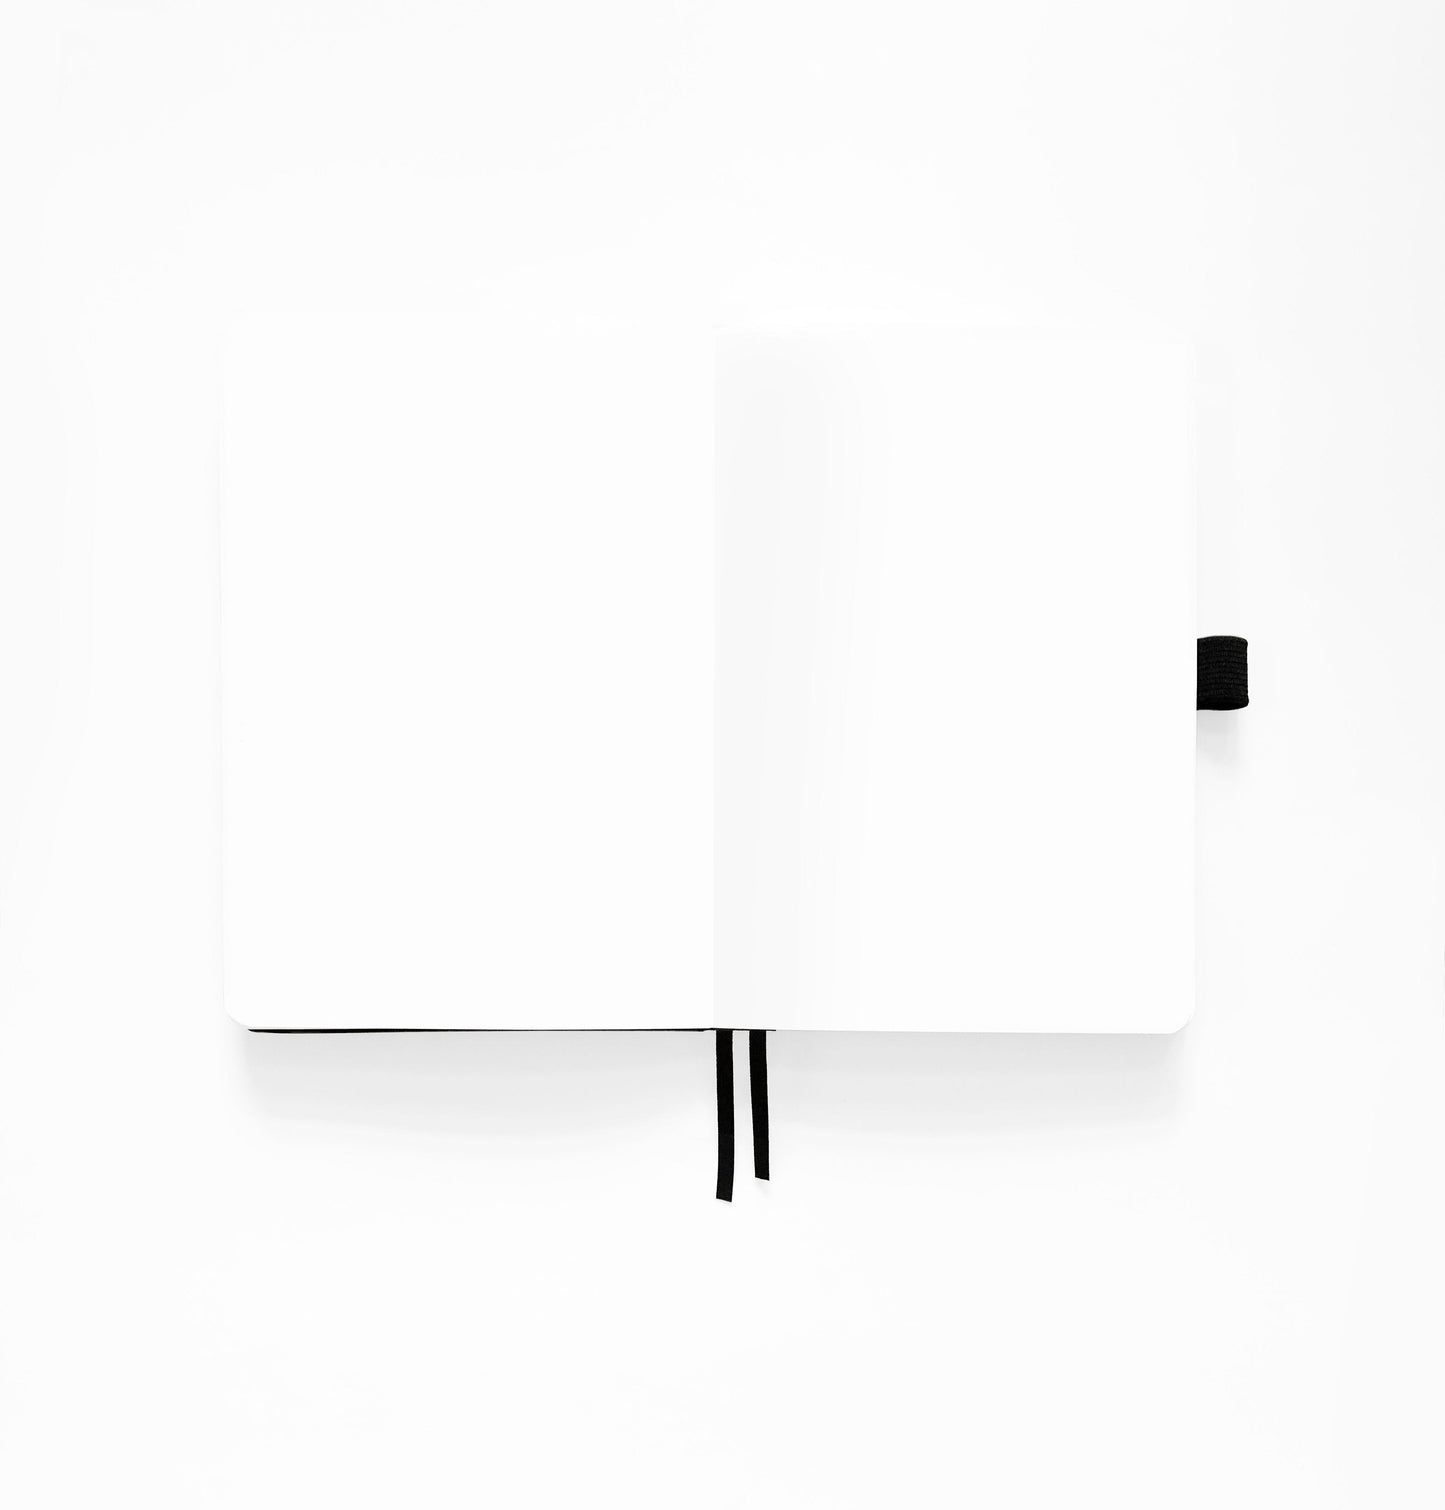 8x8 Chipmunk - Square Notebook